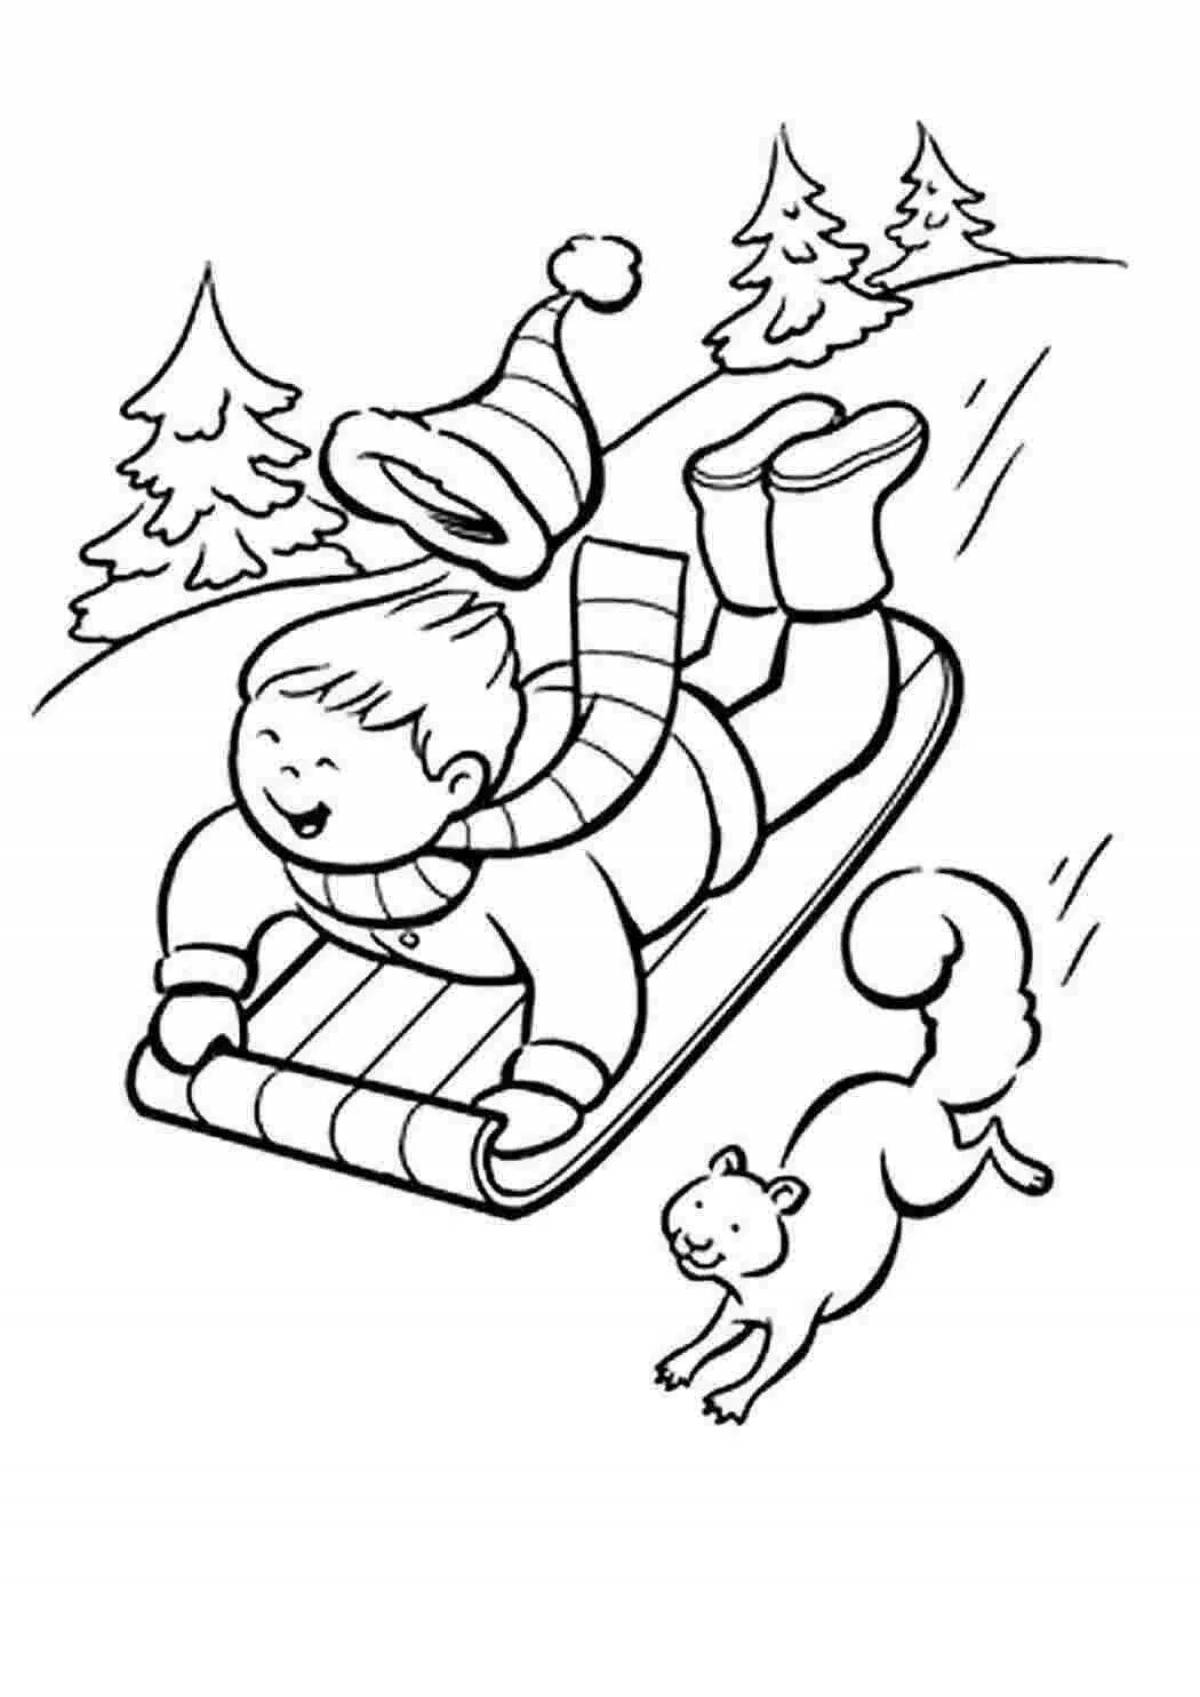 Раскраска возбужденный ребенок катается на санках